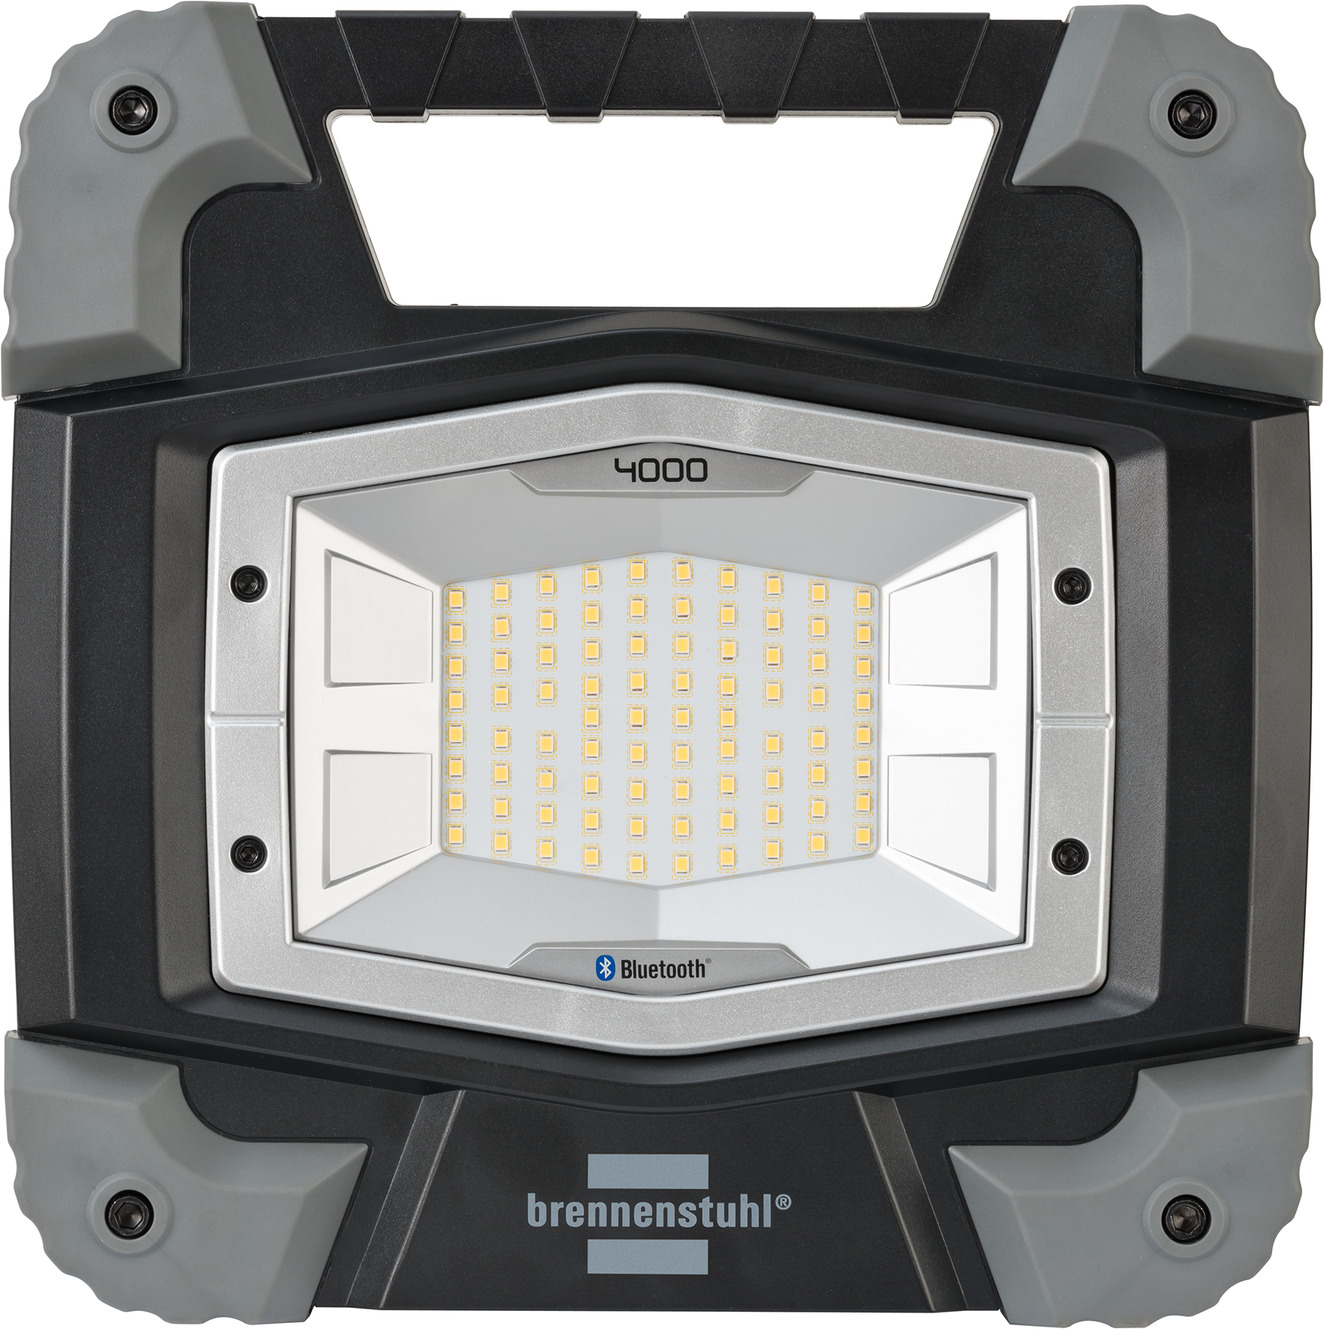 brennenstuhl® Bluetooth Baustrahler mit 4000 TORAN LED Akku Lichtsteuerungs-APP | MBA